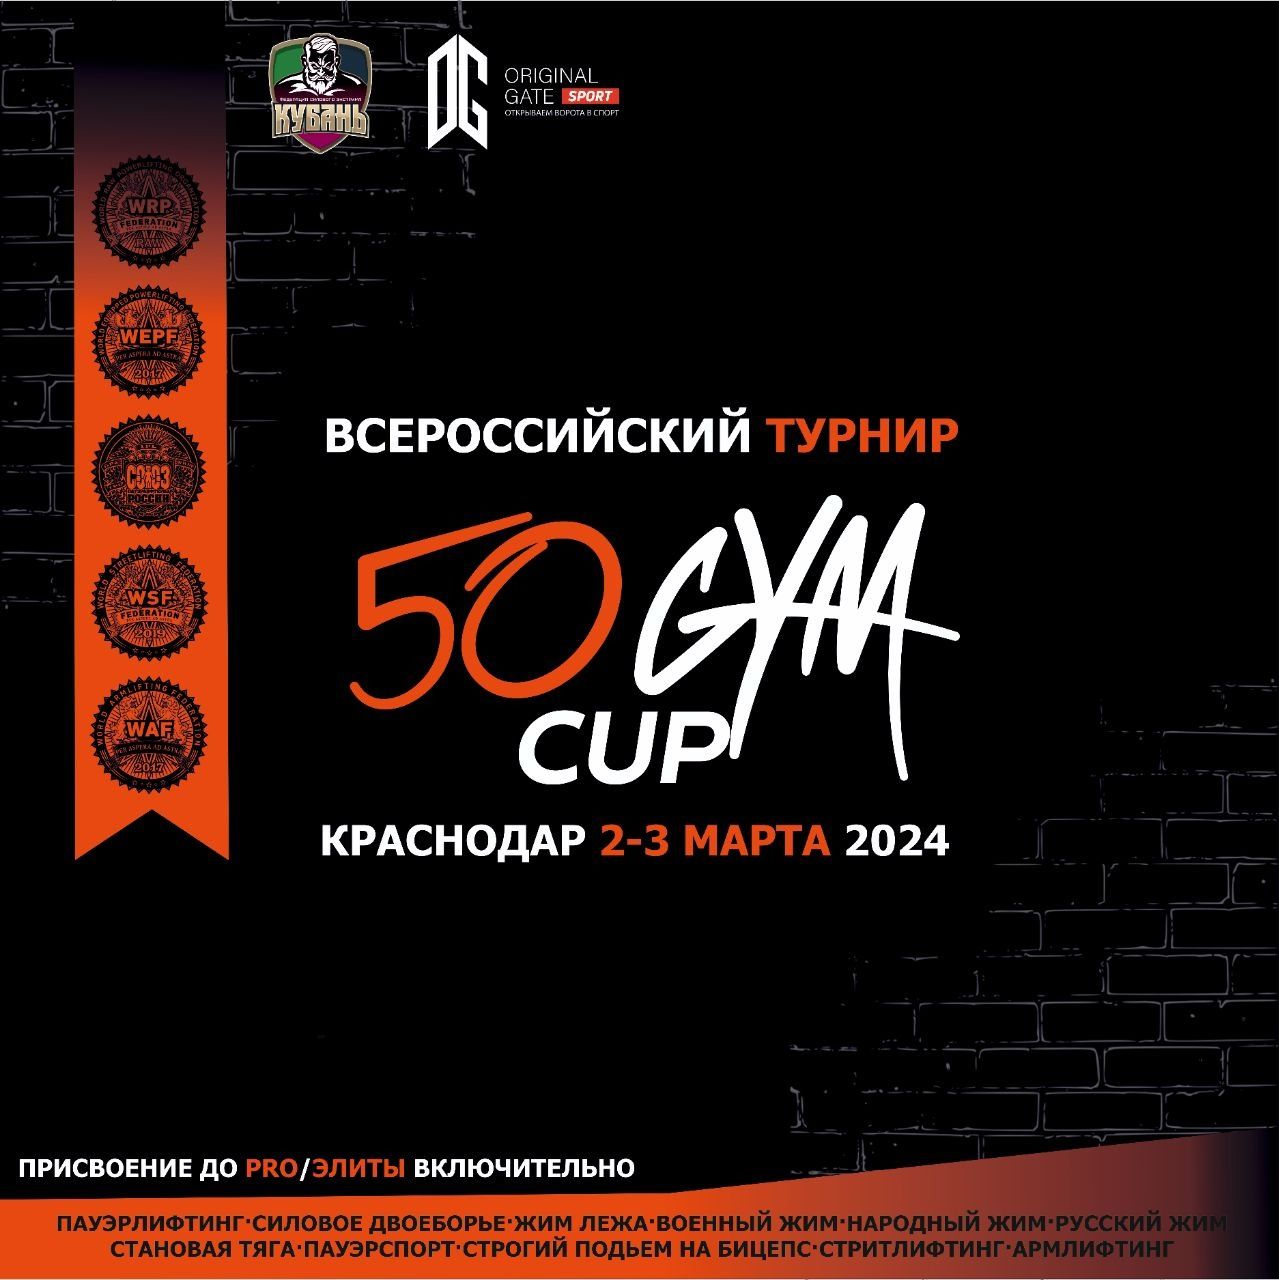 Всероссийский турнир «50 Gym Cup» WRPF/WEPF/СПР/WSF/WAF/САР, Краснодар, 02-03.03.2024